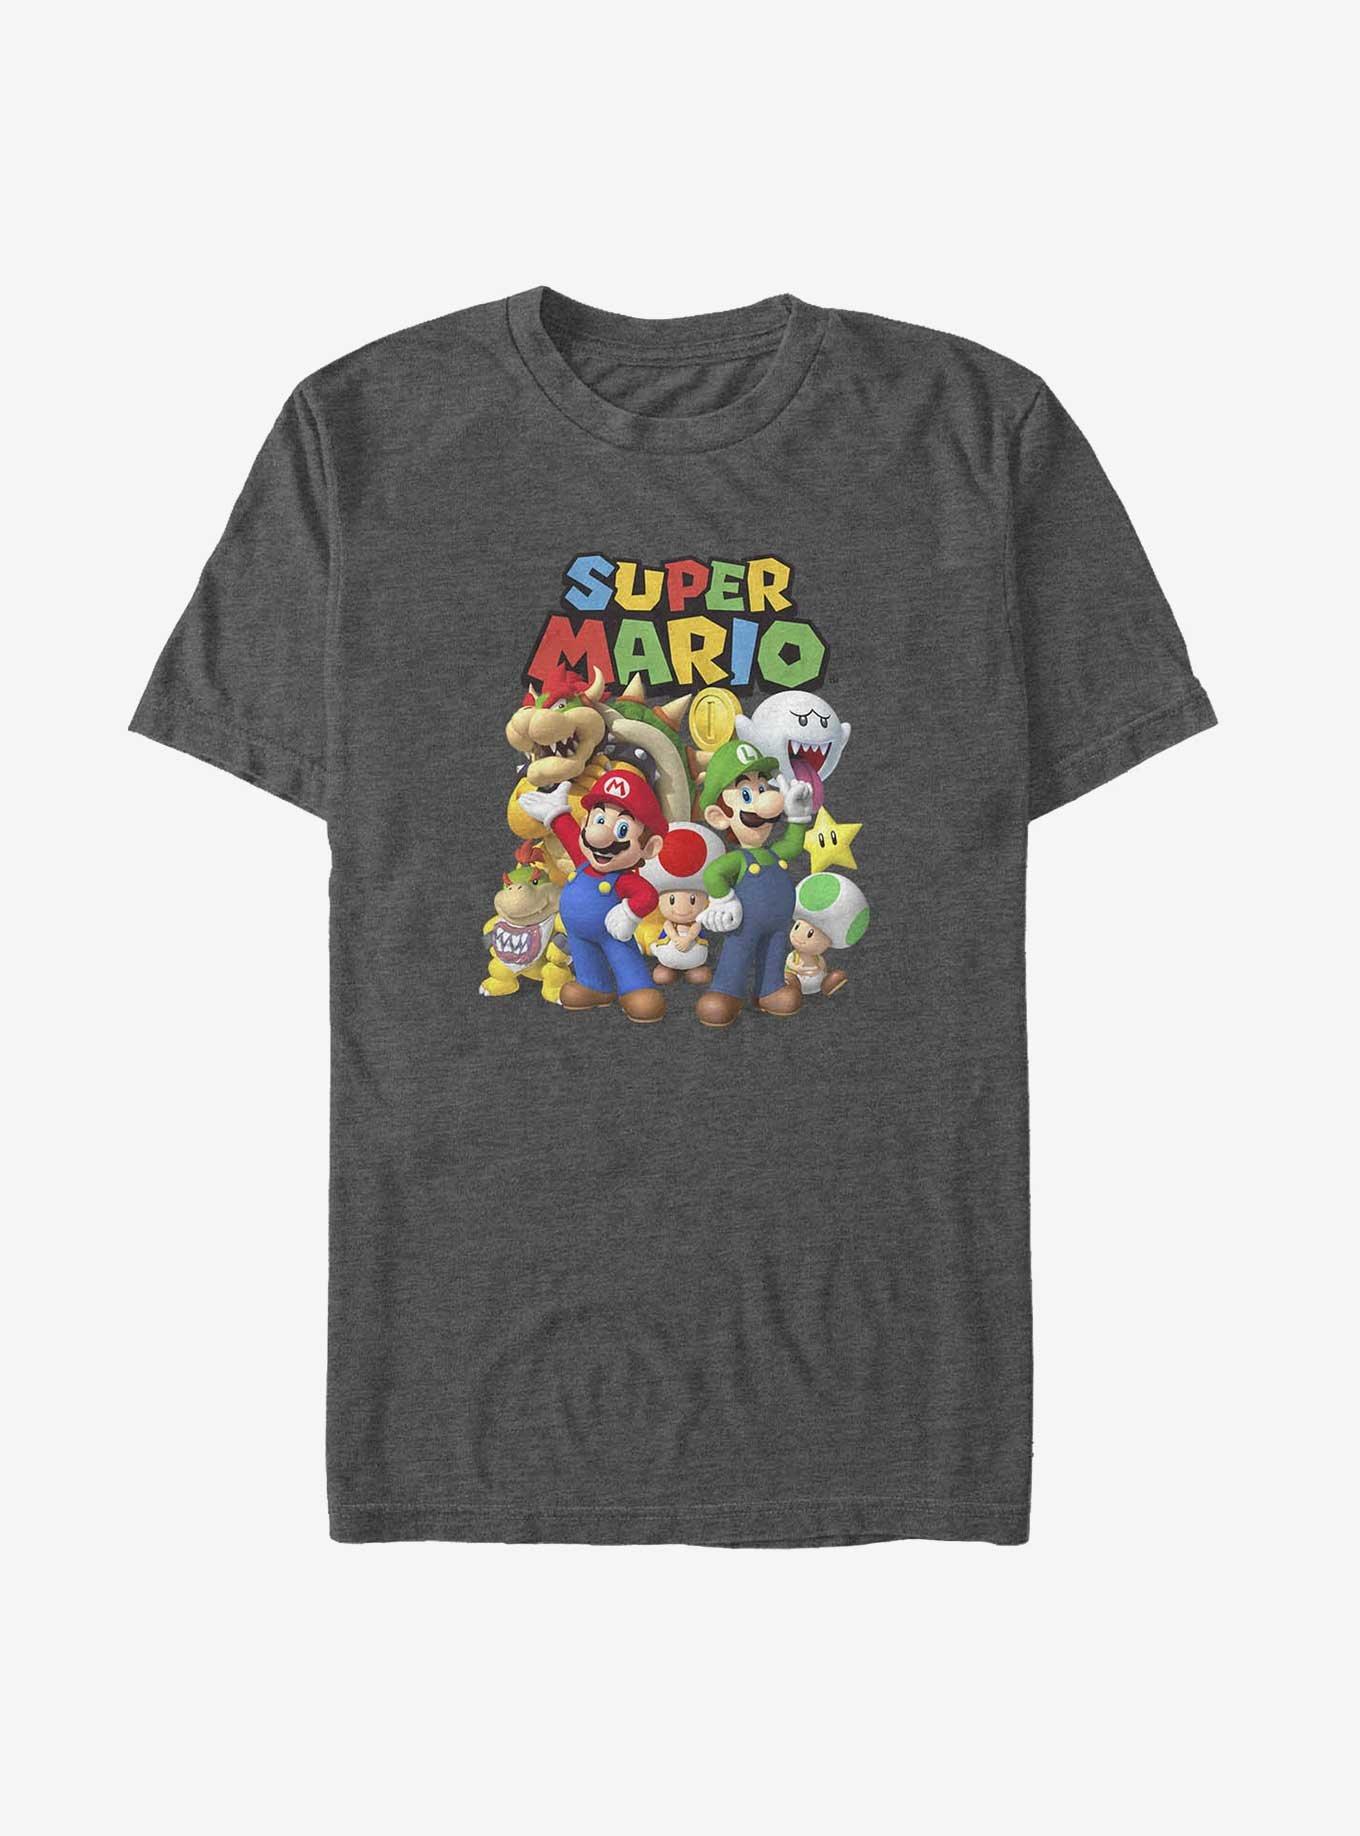 Nintendo Super Mario GroupBig & Tall T-Shirt, CHAR HTR, hi-res